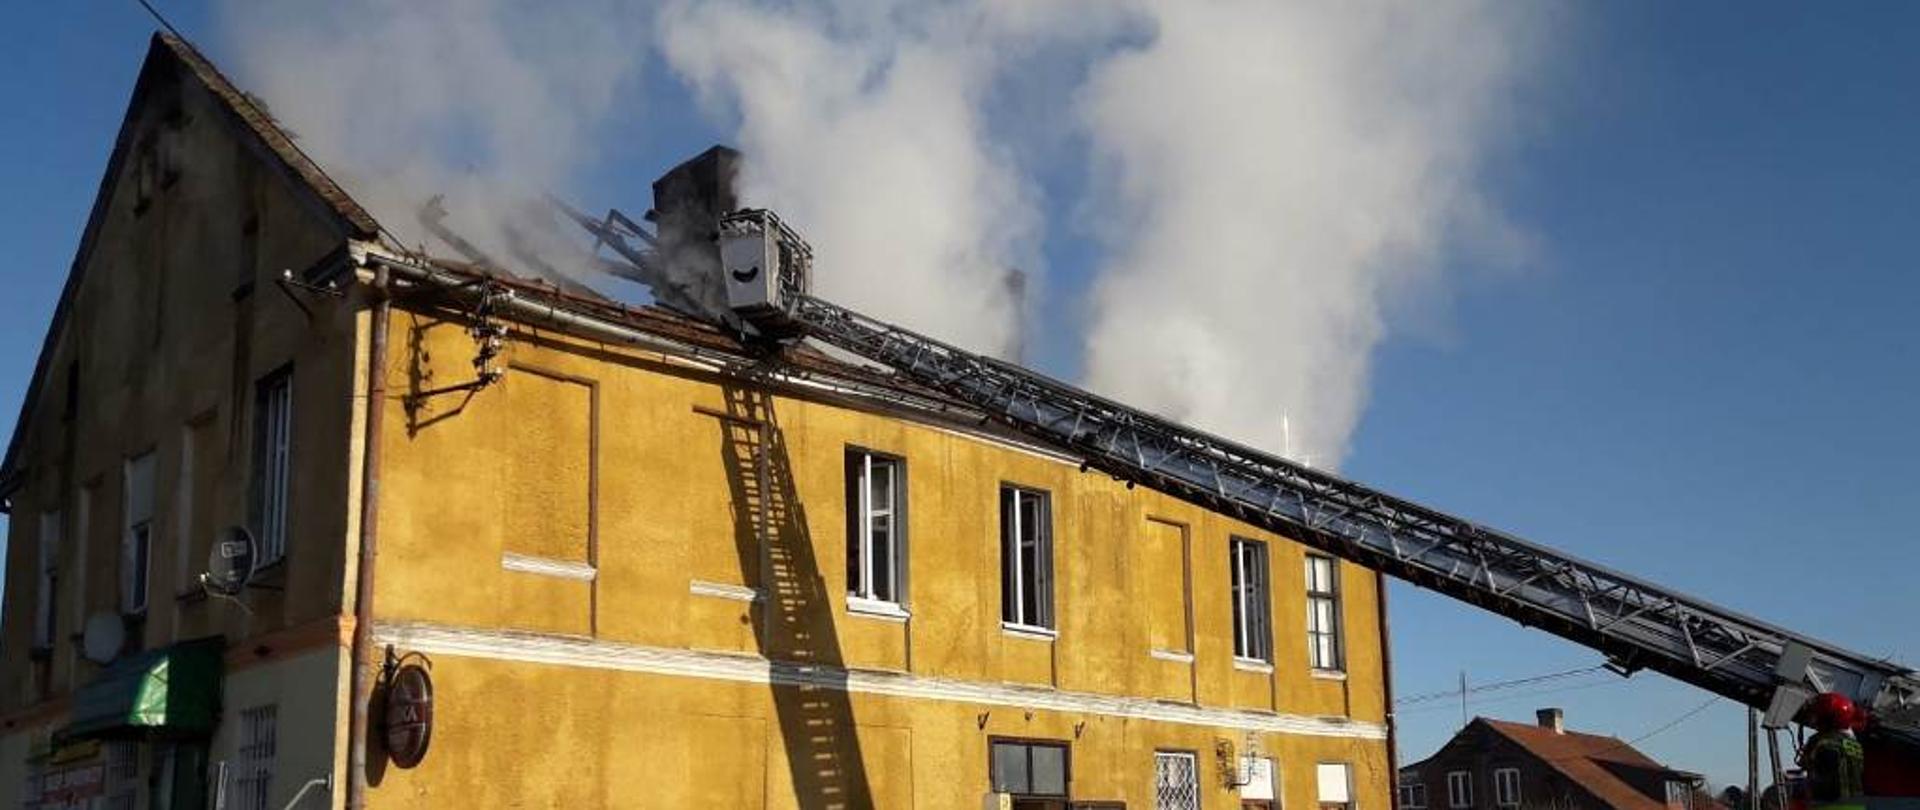 Widoczny jest dach budynku wielorodzinnego w Słoneczniku. Pomimo ugaszenia płomieni nadal wydobywają się z dachu duże ilości dymu. Trwa dogadzanie dachu przy pomocy wysięgnika samochodu ratowniczo-gaśniczego.